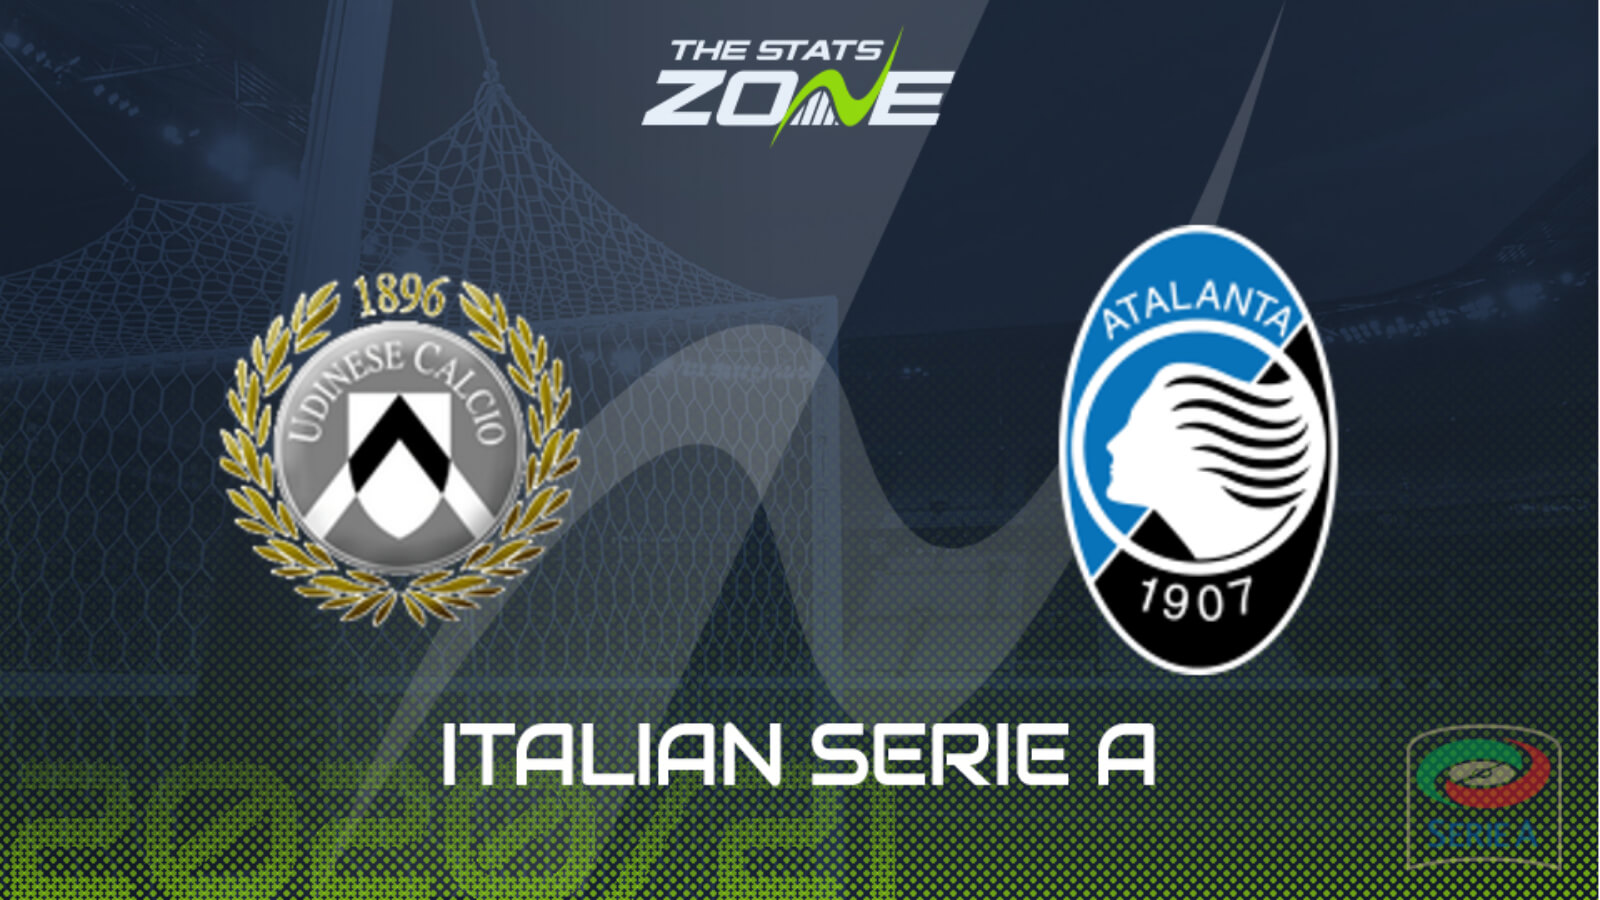 Nhận định bóng đá Ý: Udinese vs Atalanta